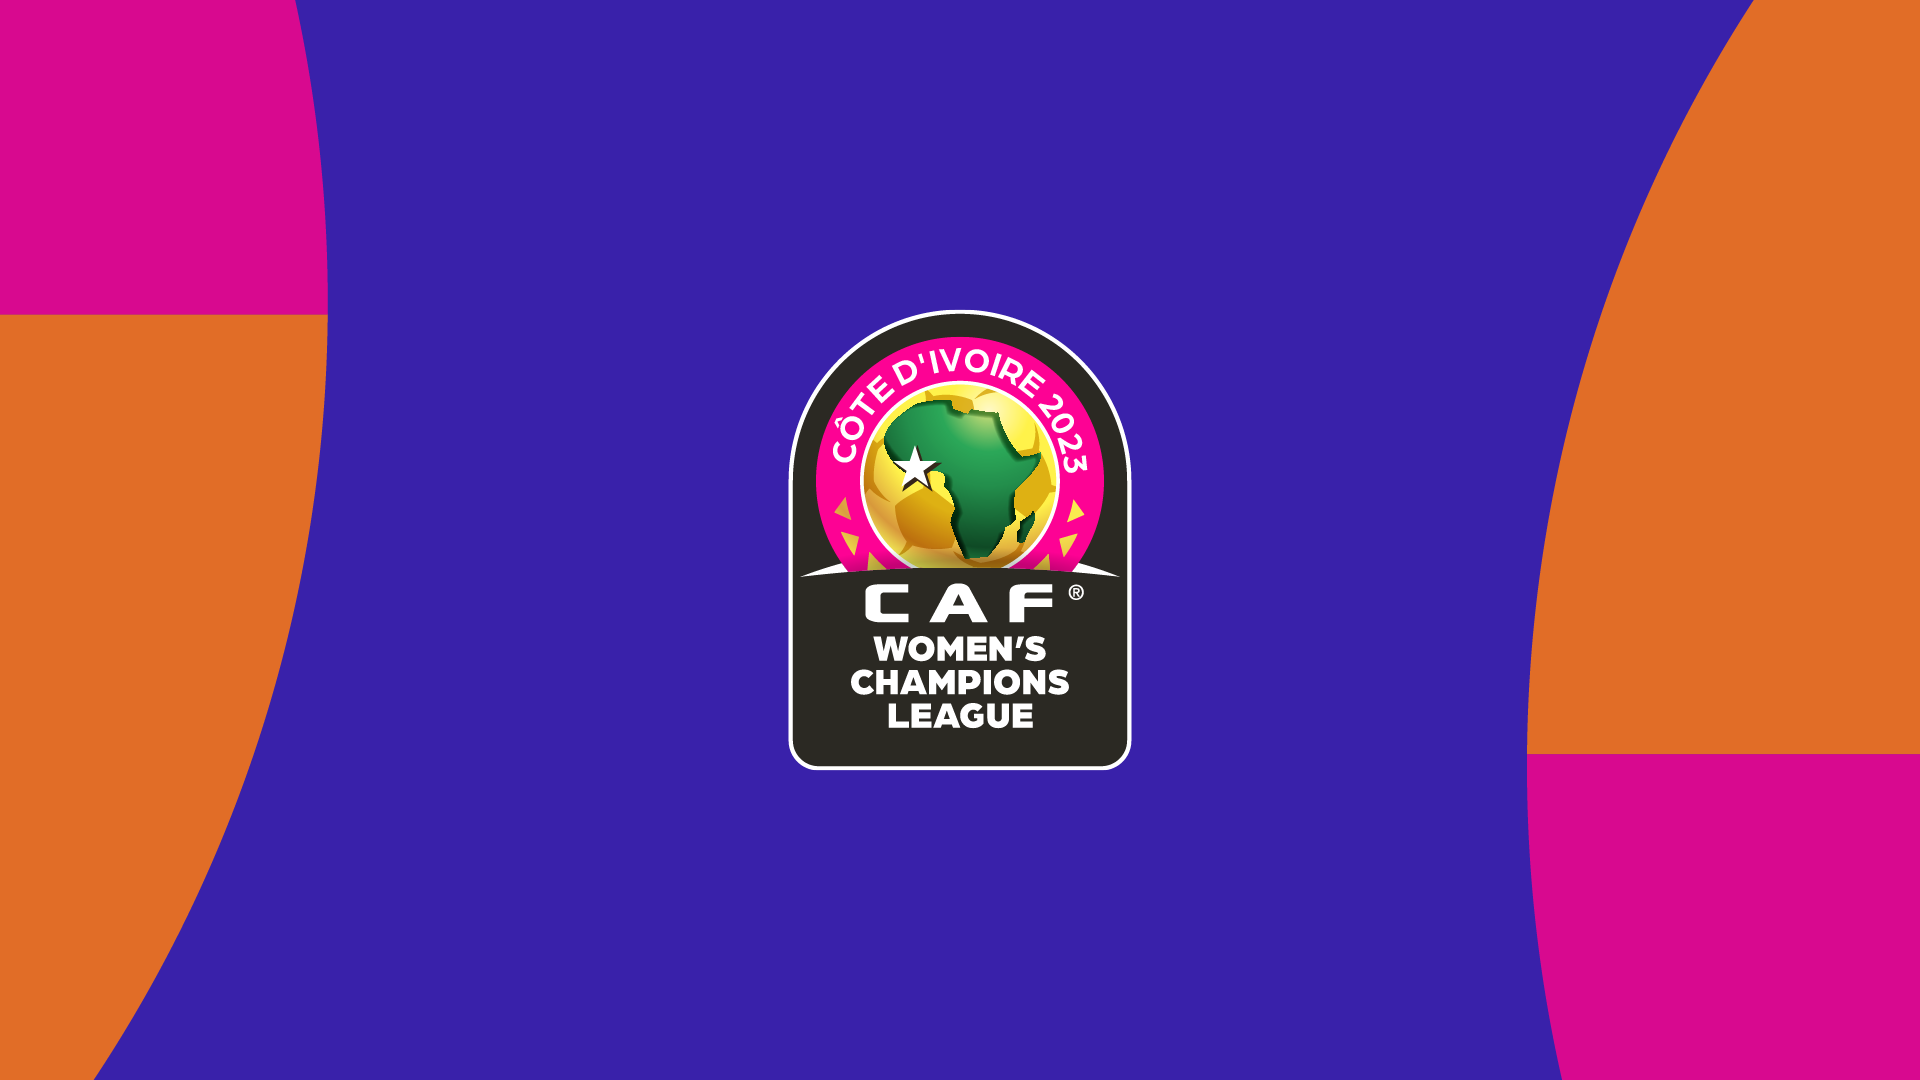 Cúp bóng đá nữ châu Phi – Giải đấu tiên phong cho bóng đá nữ châu Phi